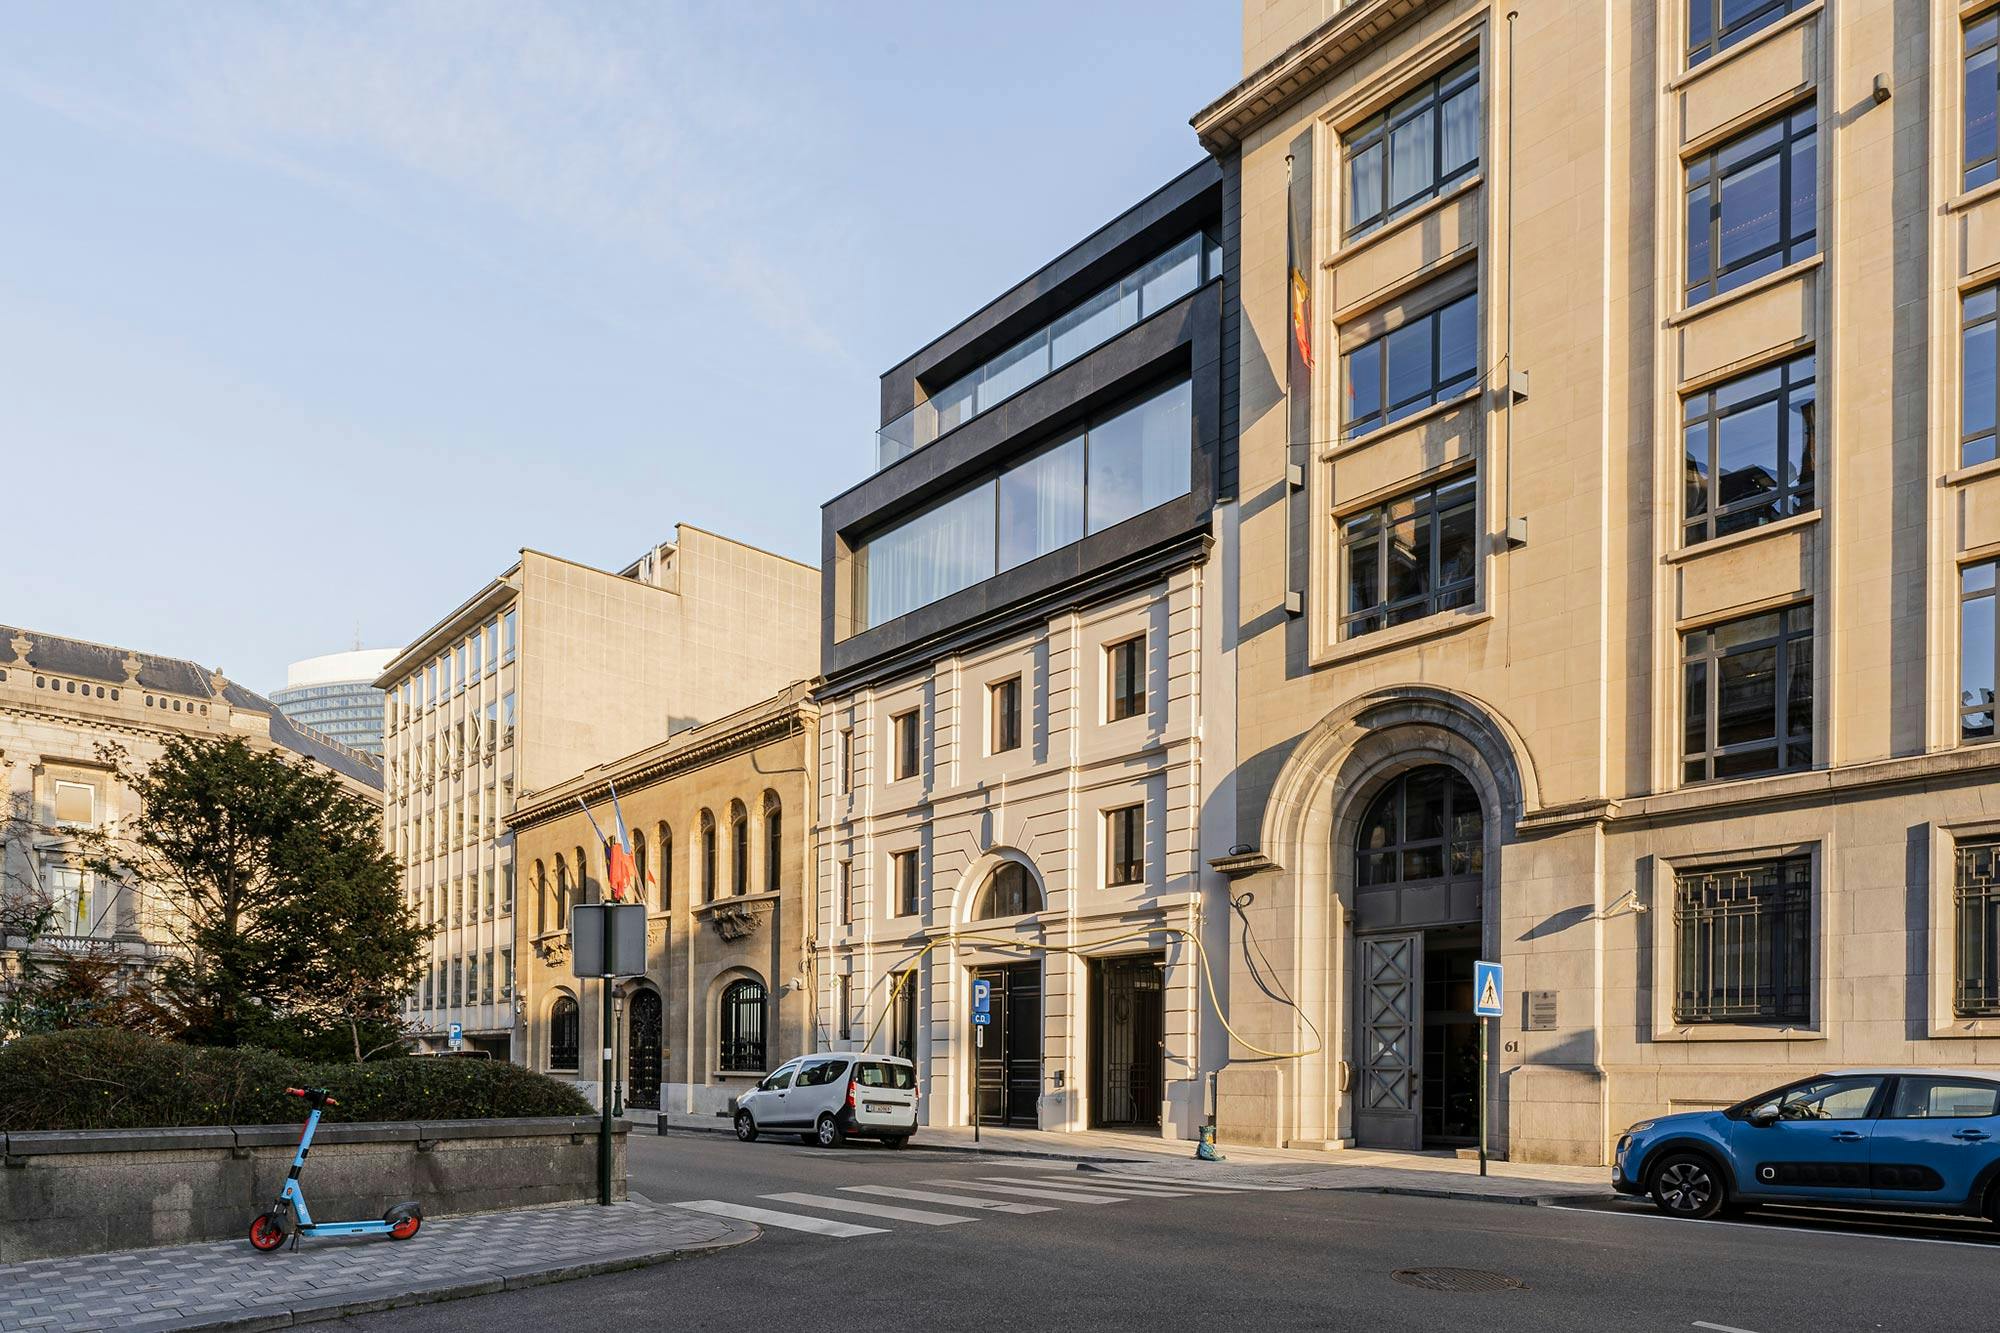 Numéro d'image 34 de la section actuelle de Réflexions en Dekton: la rénovation du bâtiment classique « The Duke » de Bruxelles de Cosentino France